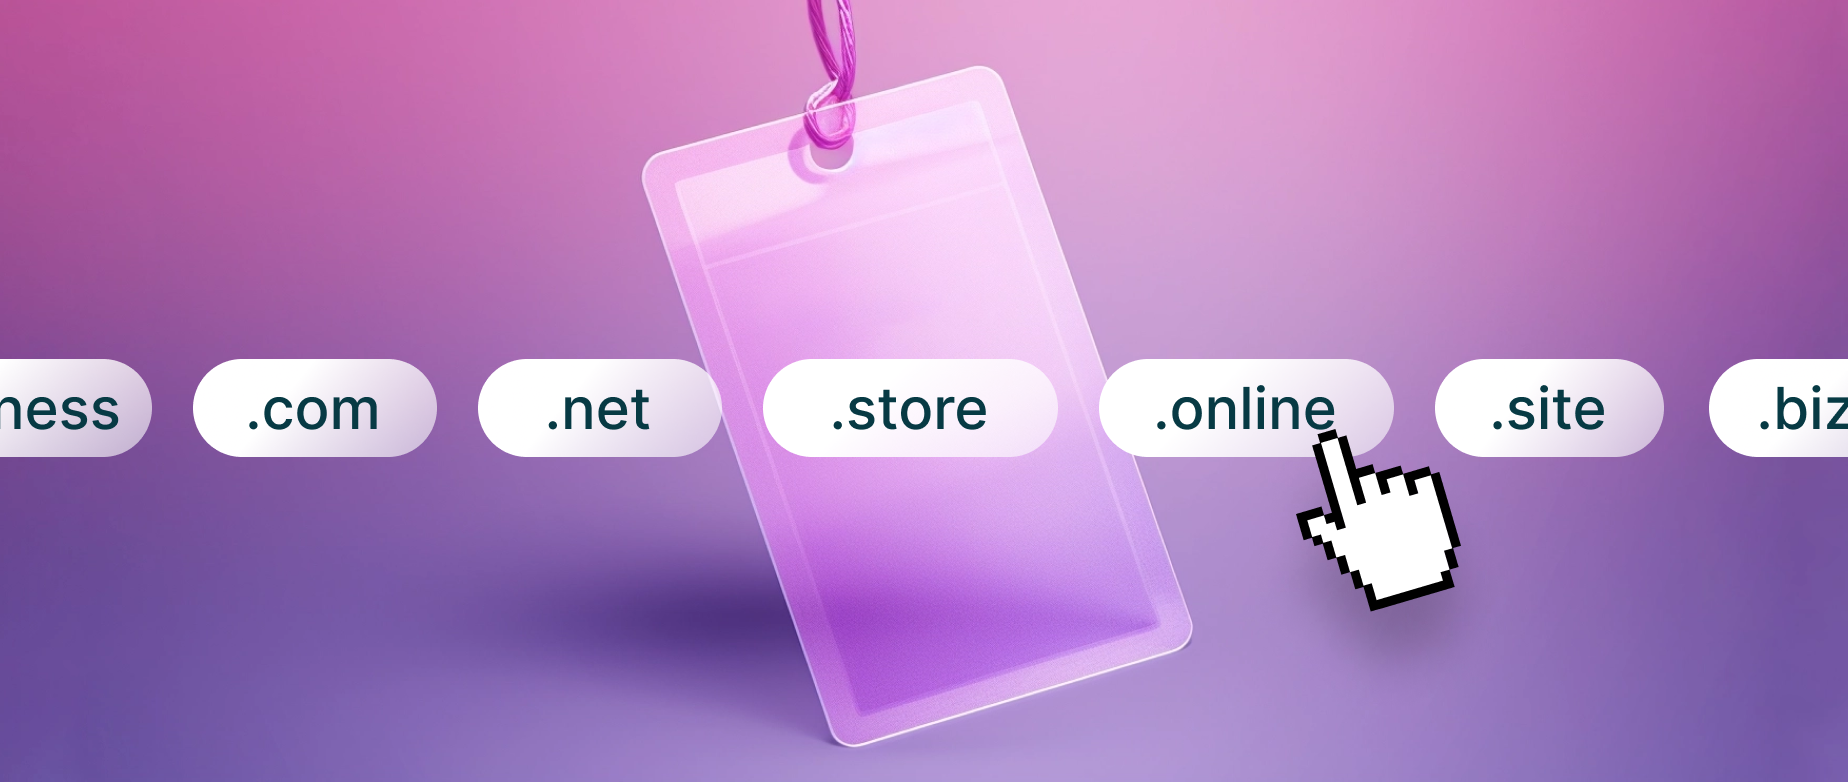 一个价格标签挂在流行的域名扩展名后面，代表域名价格的概念。